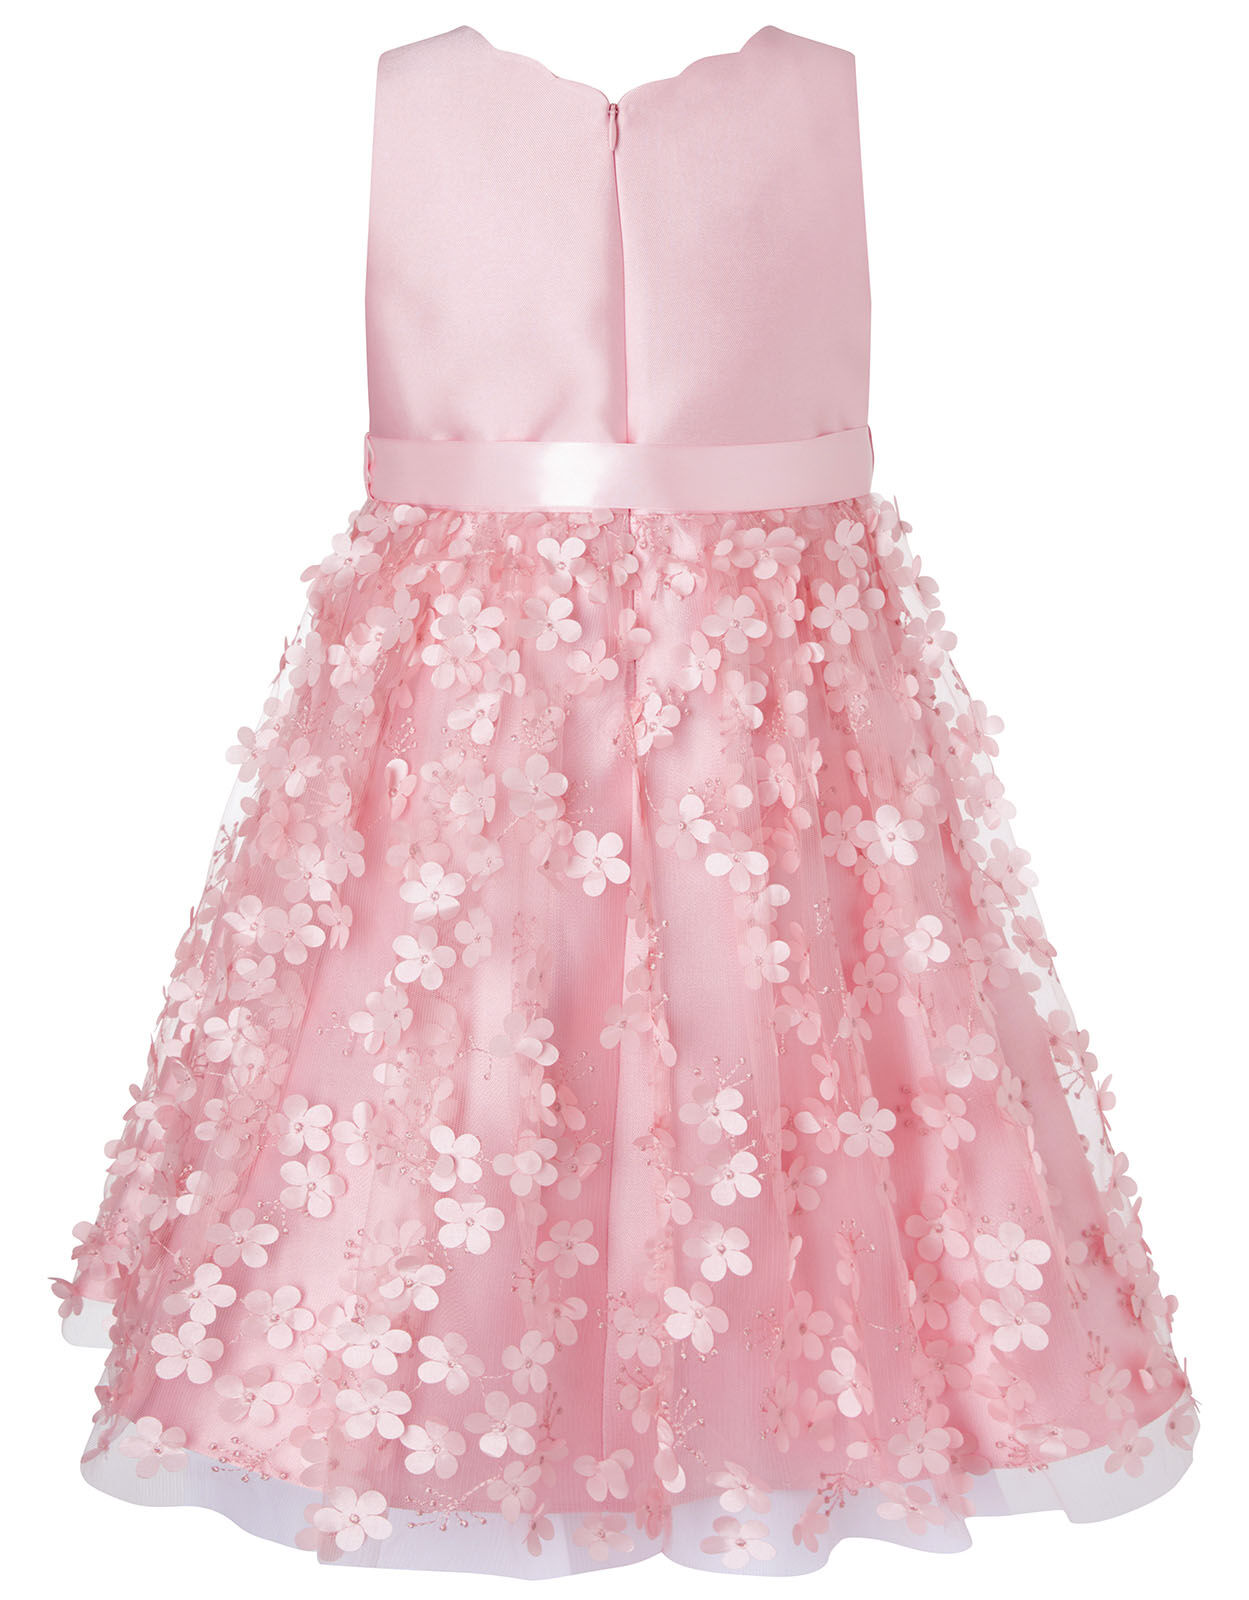 3D Flower Dress Pink | Girls' Dresses ...